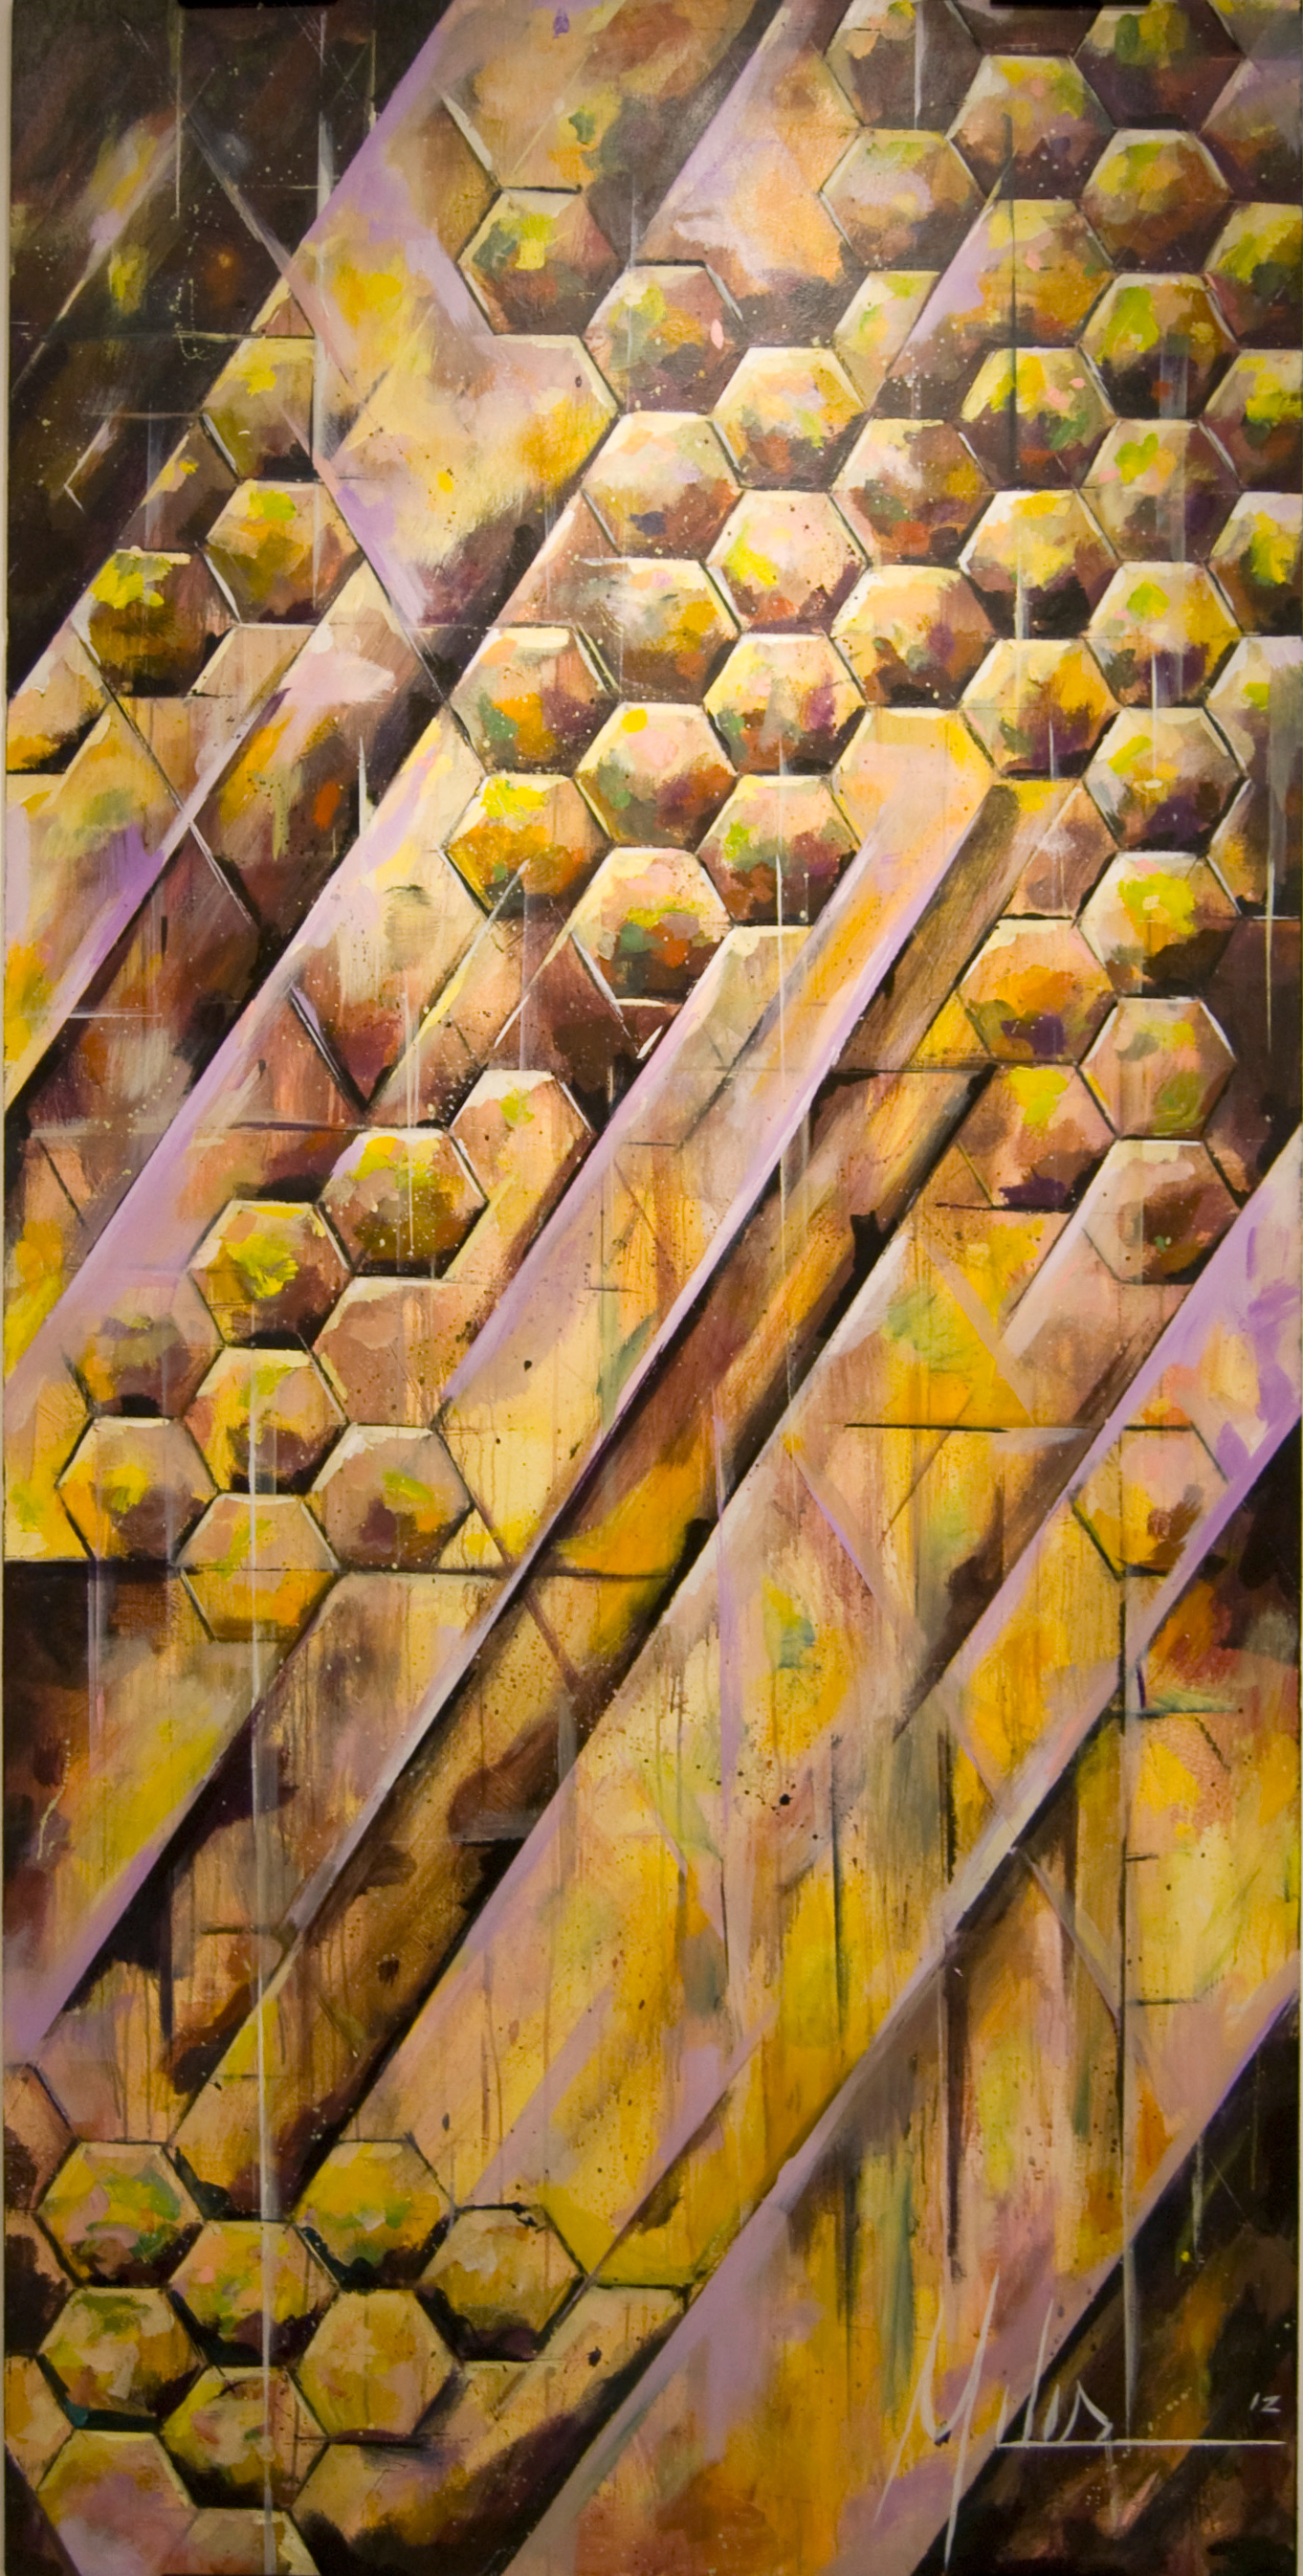    
    
 
 
 
 
 
 
 
 
 
 
   
    
  
      “Colony Collapse II”  acrylic on wood panel  48” x 96”  2012  $2600 